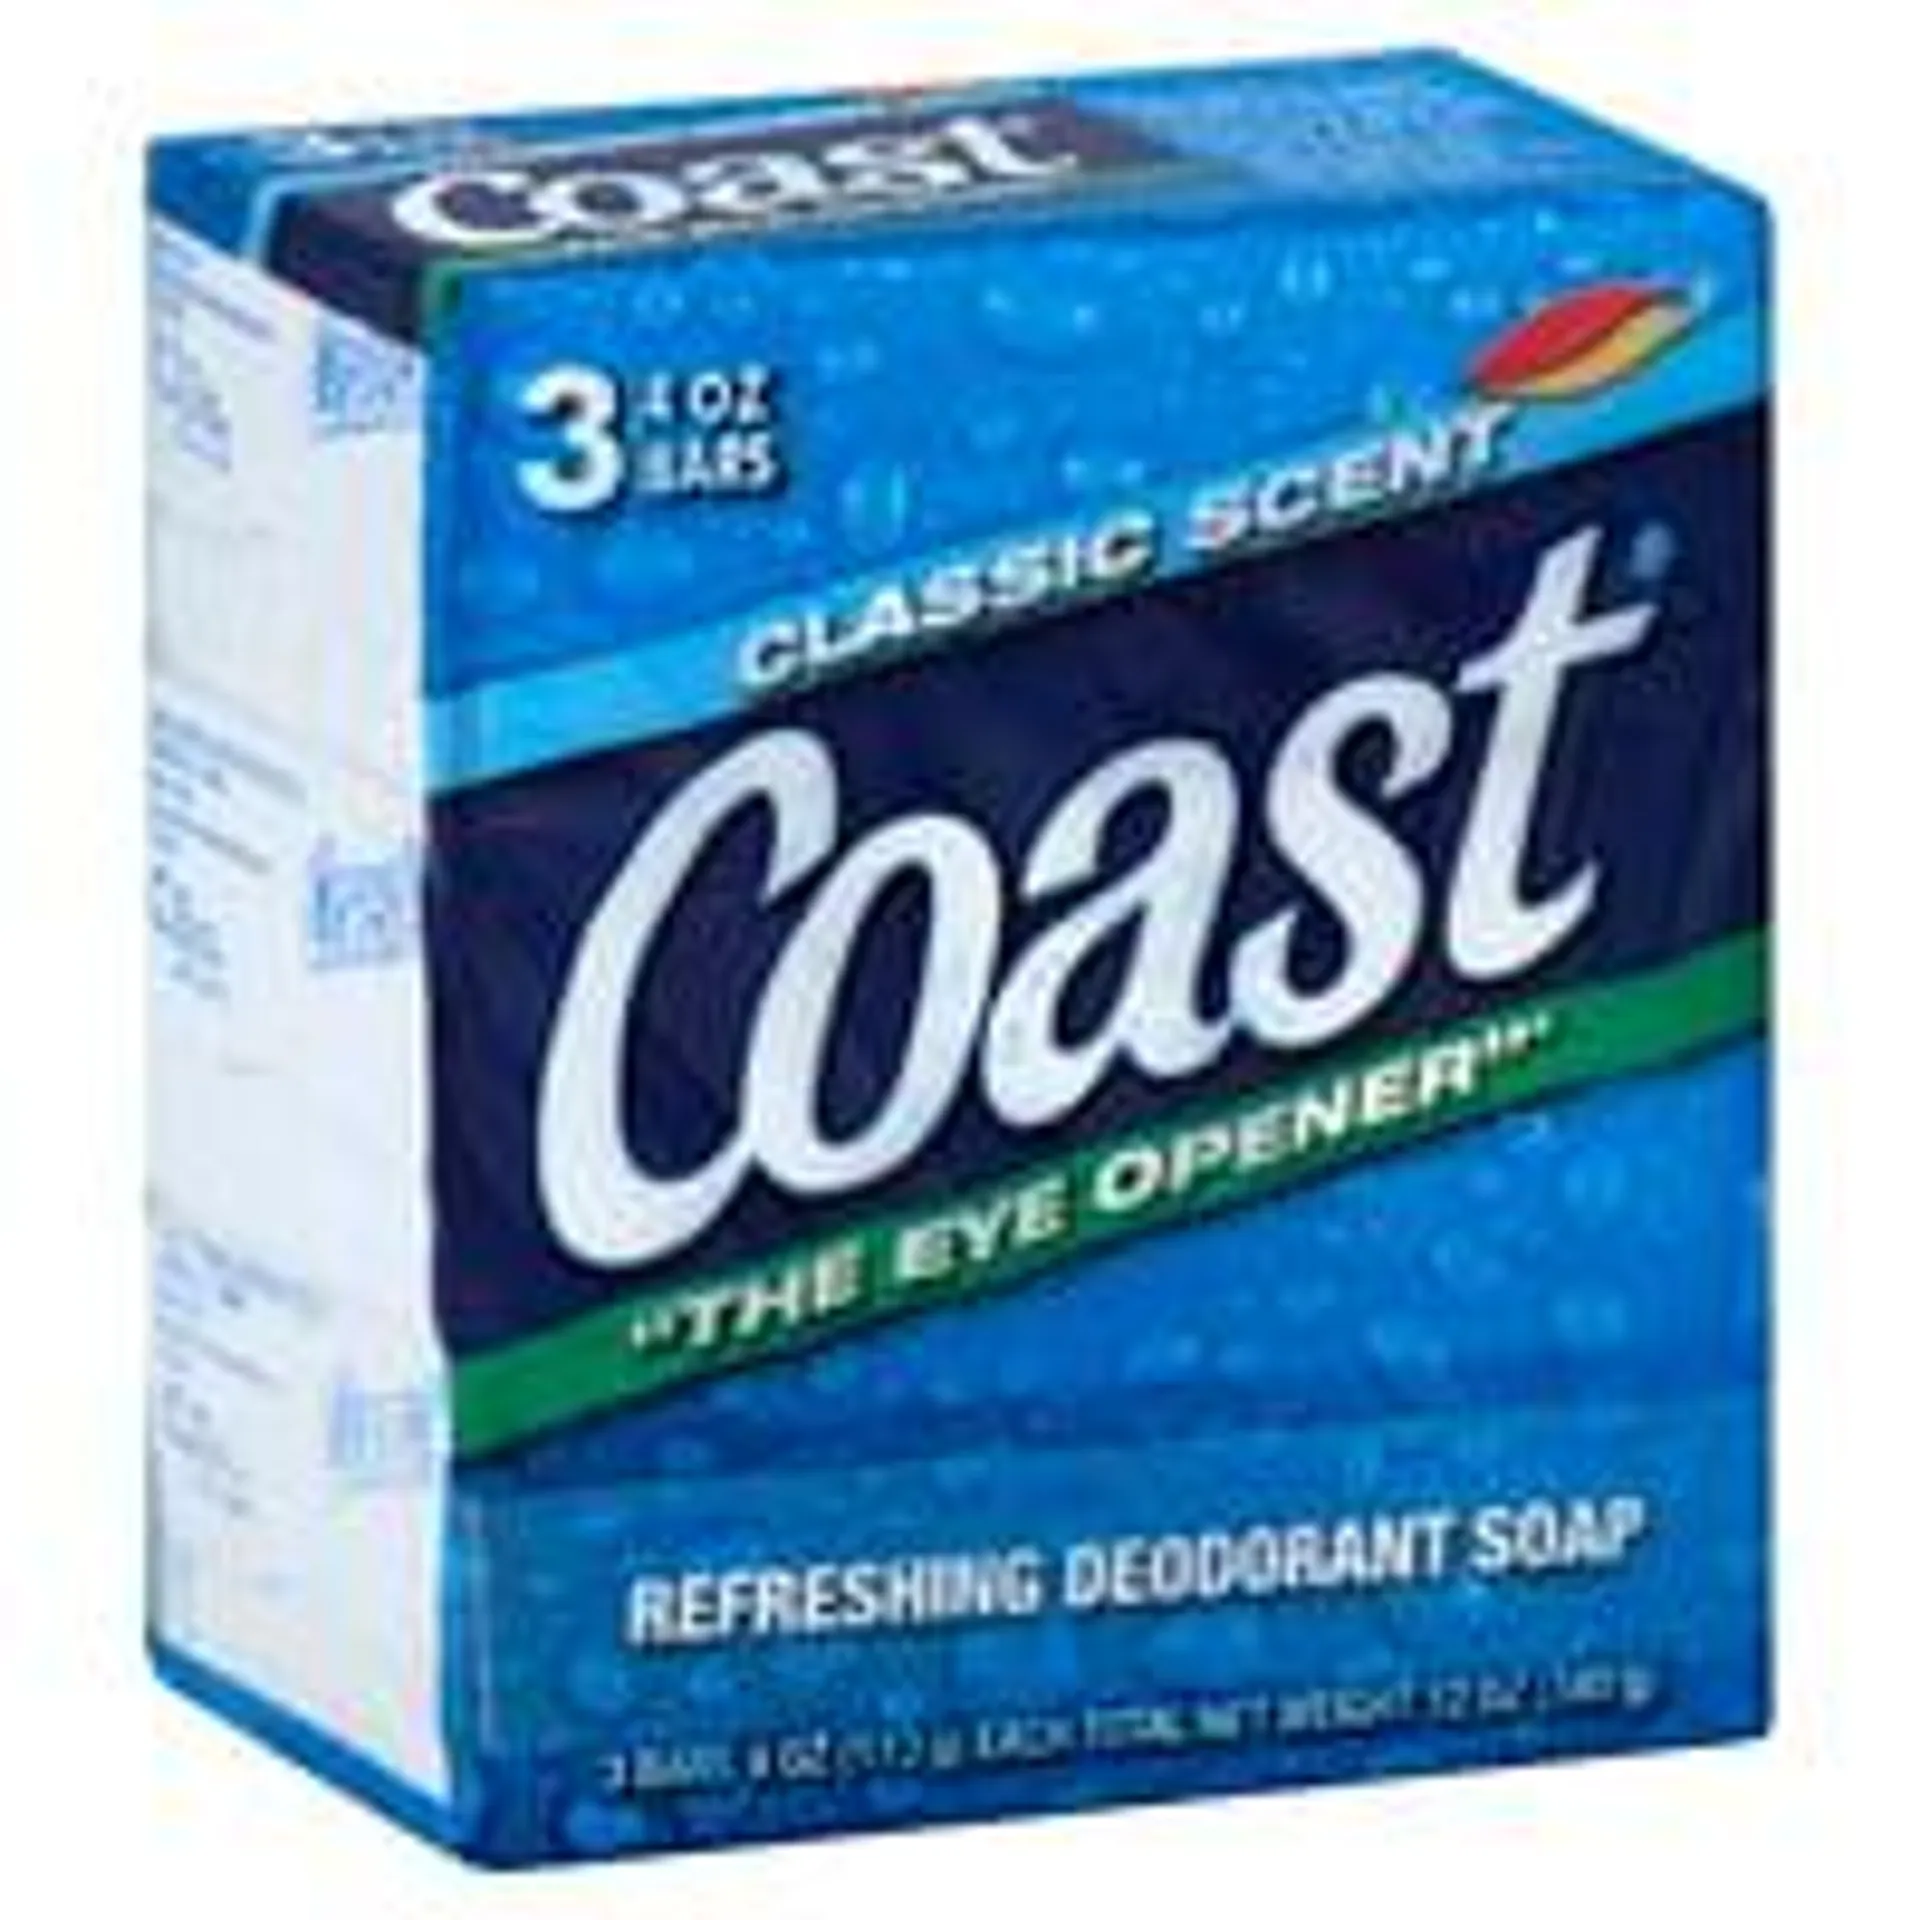 Coast, Deodorant Soap, Classic Scent